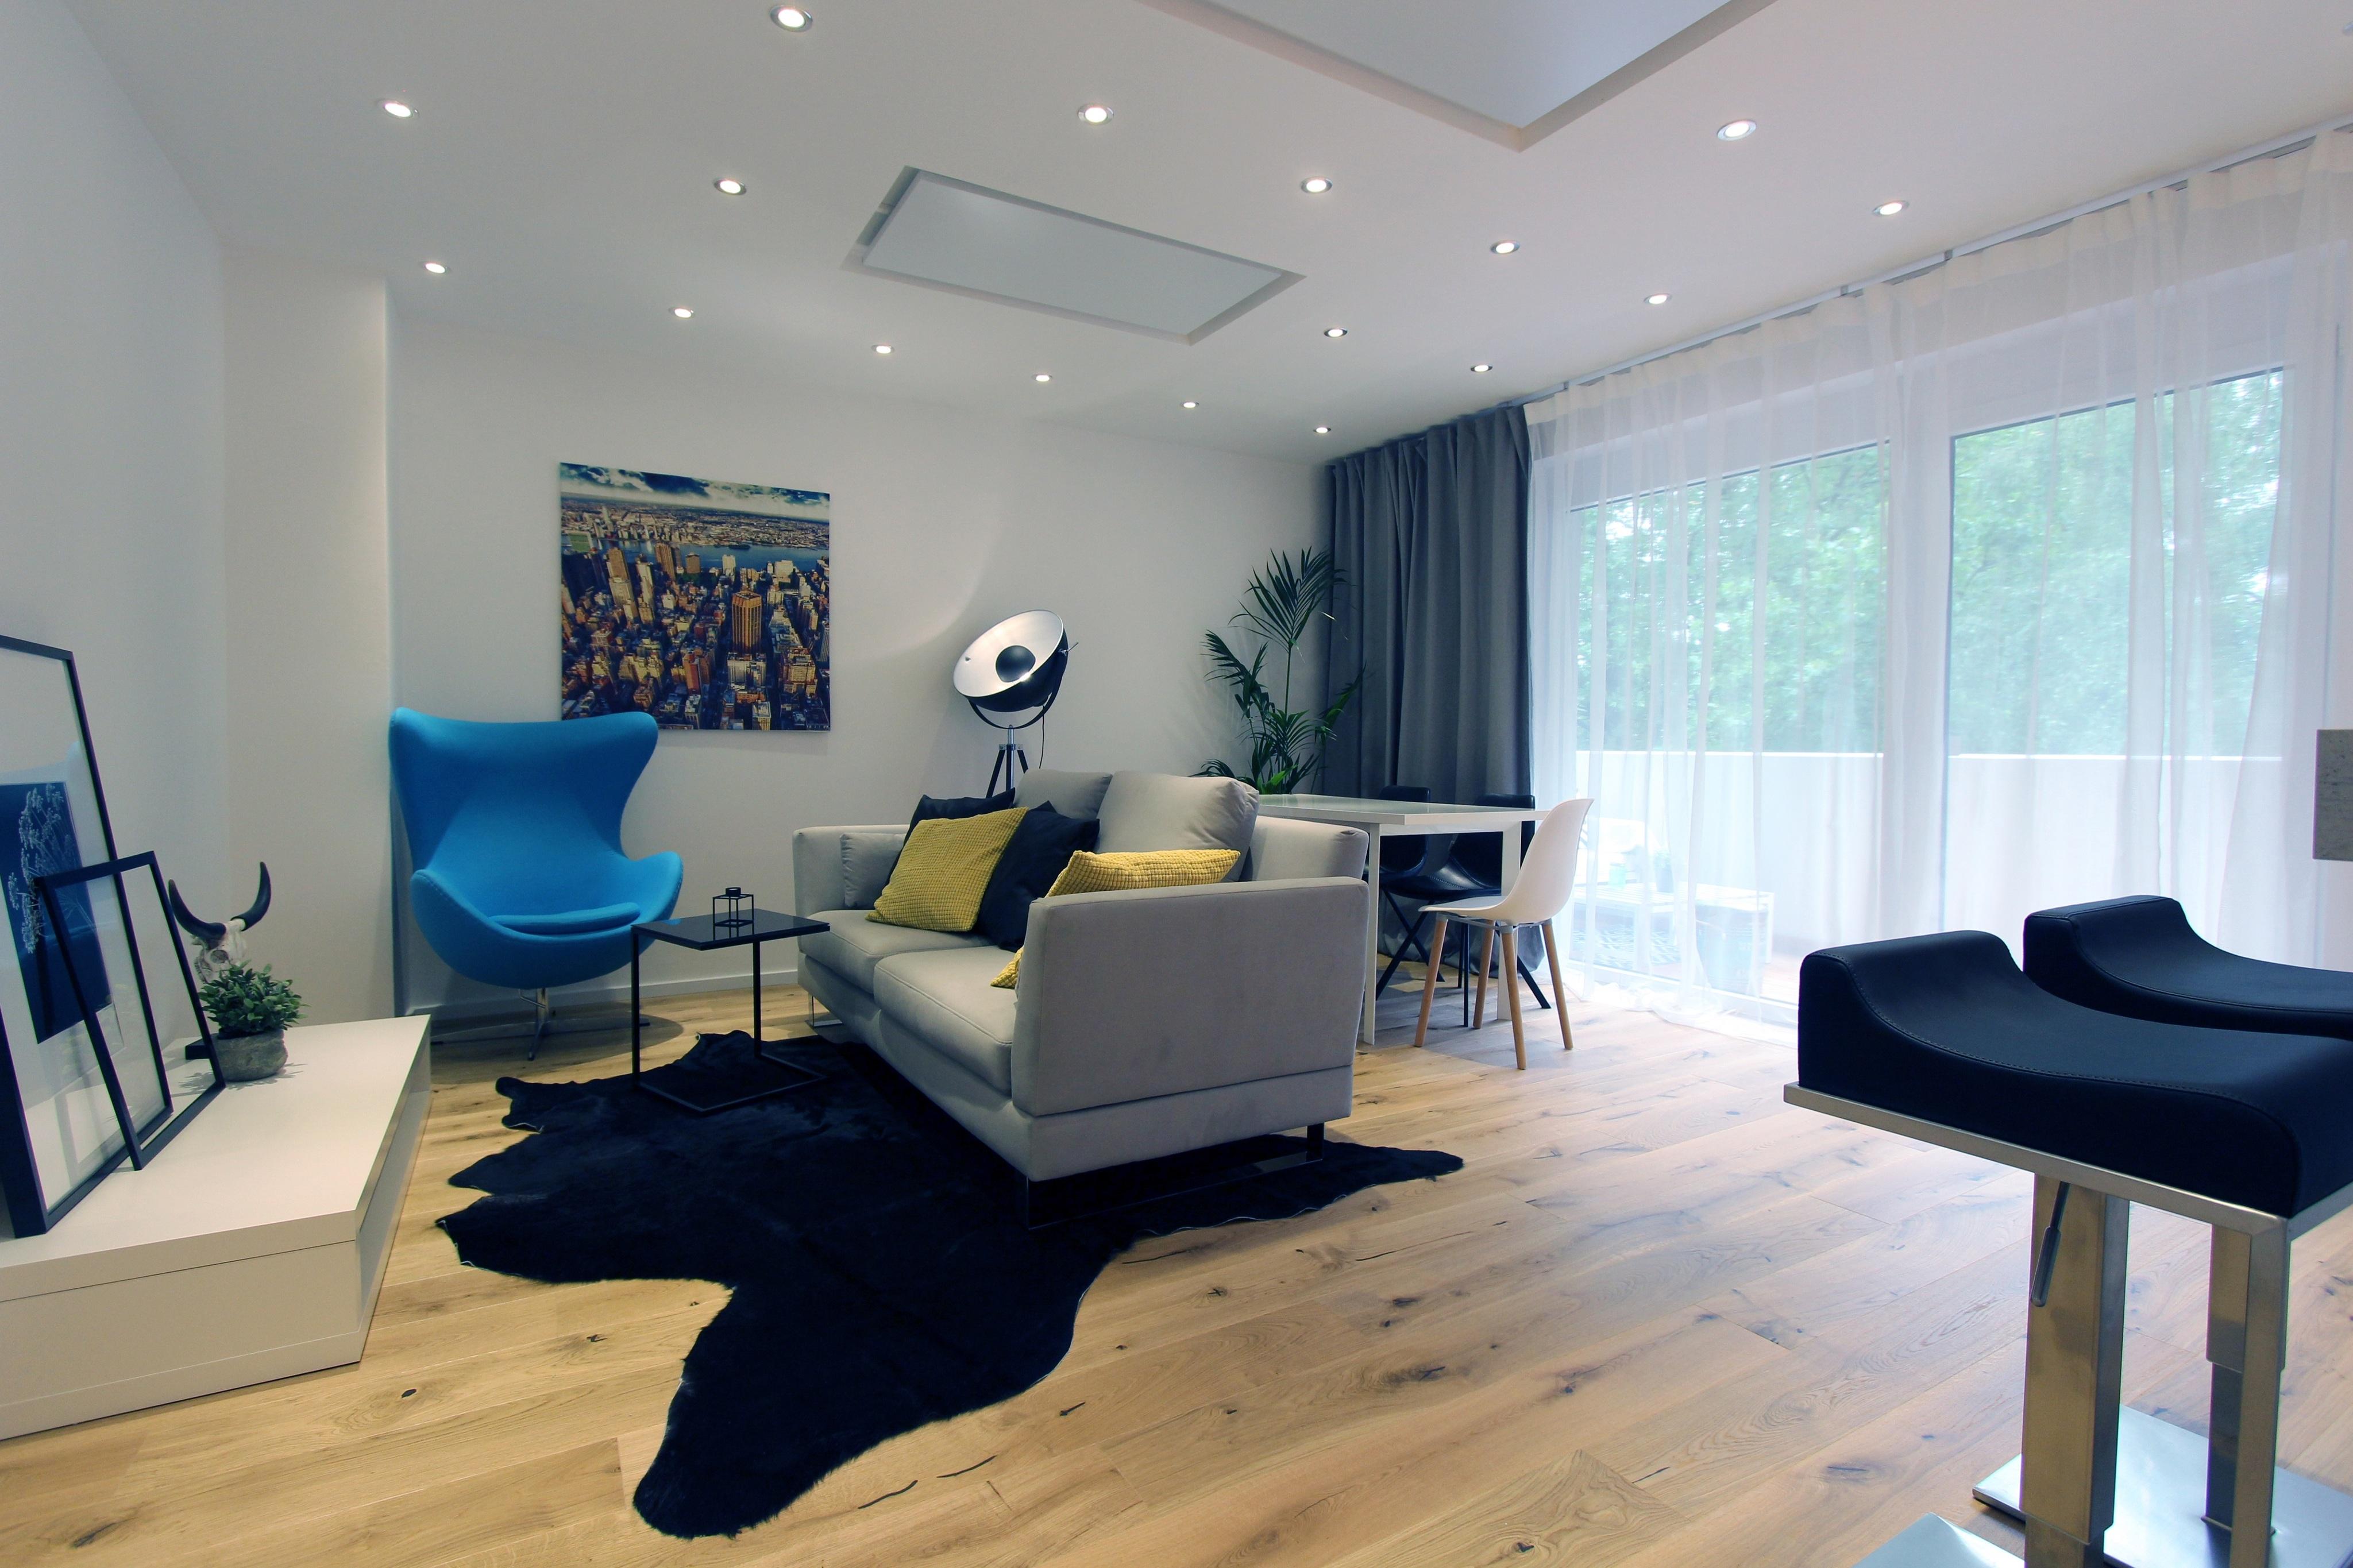 Home Staging Wohnzimmer #wohnzimmer #stehlampe #ebenerdigedusche #einrichtungsberatung #raumgestaltung ©Isabella Hemmer